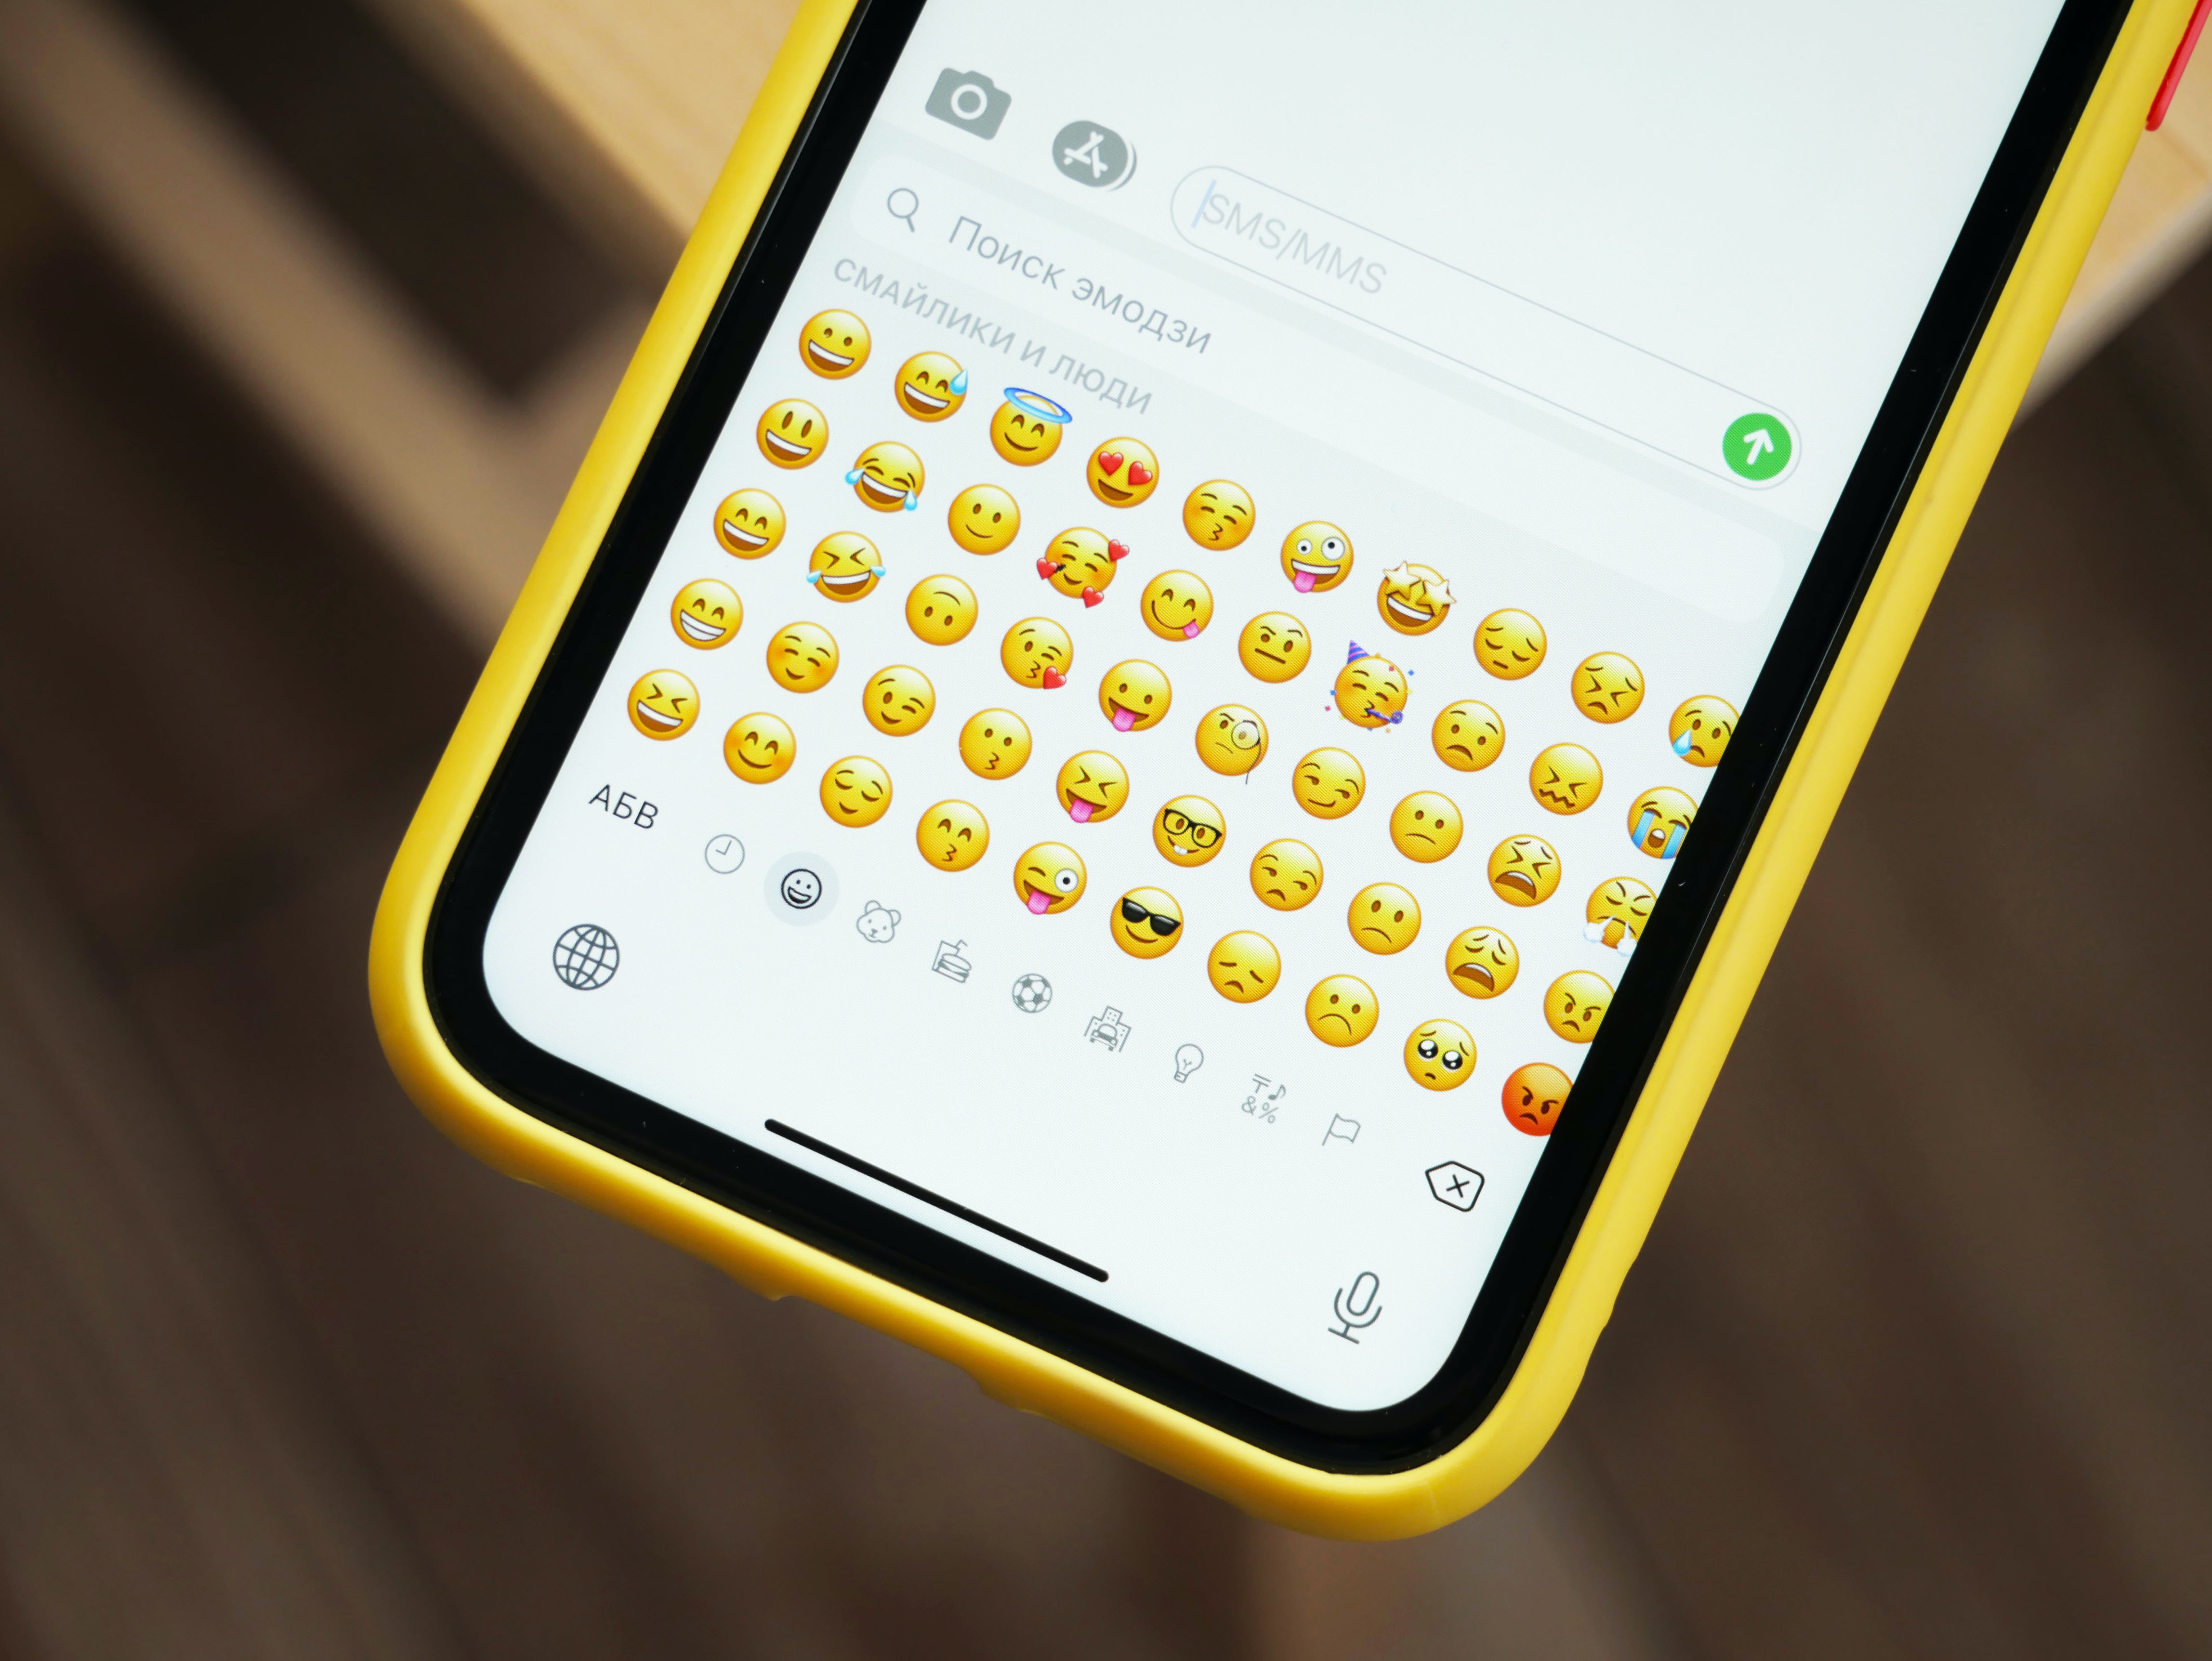 WhatsApp cambiará el teclado, los emojis y el envío de imágenes